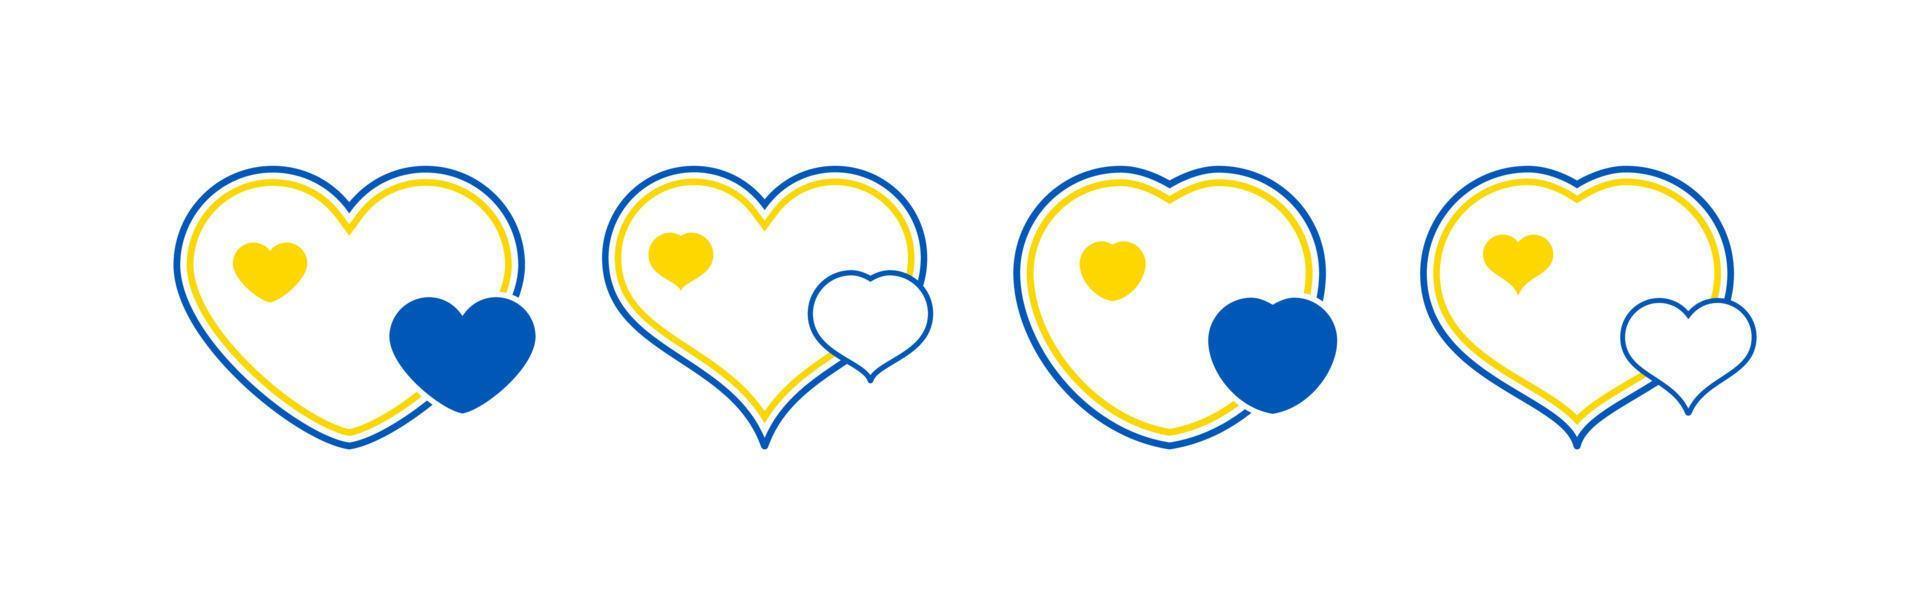 conjunto de corazones en colores ucranianos vector